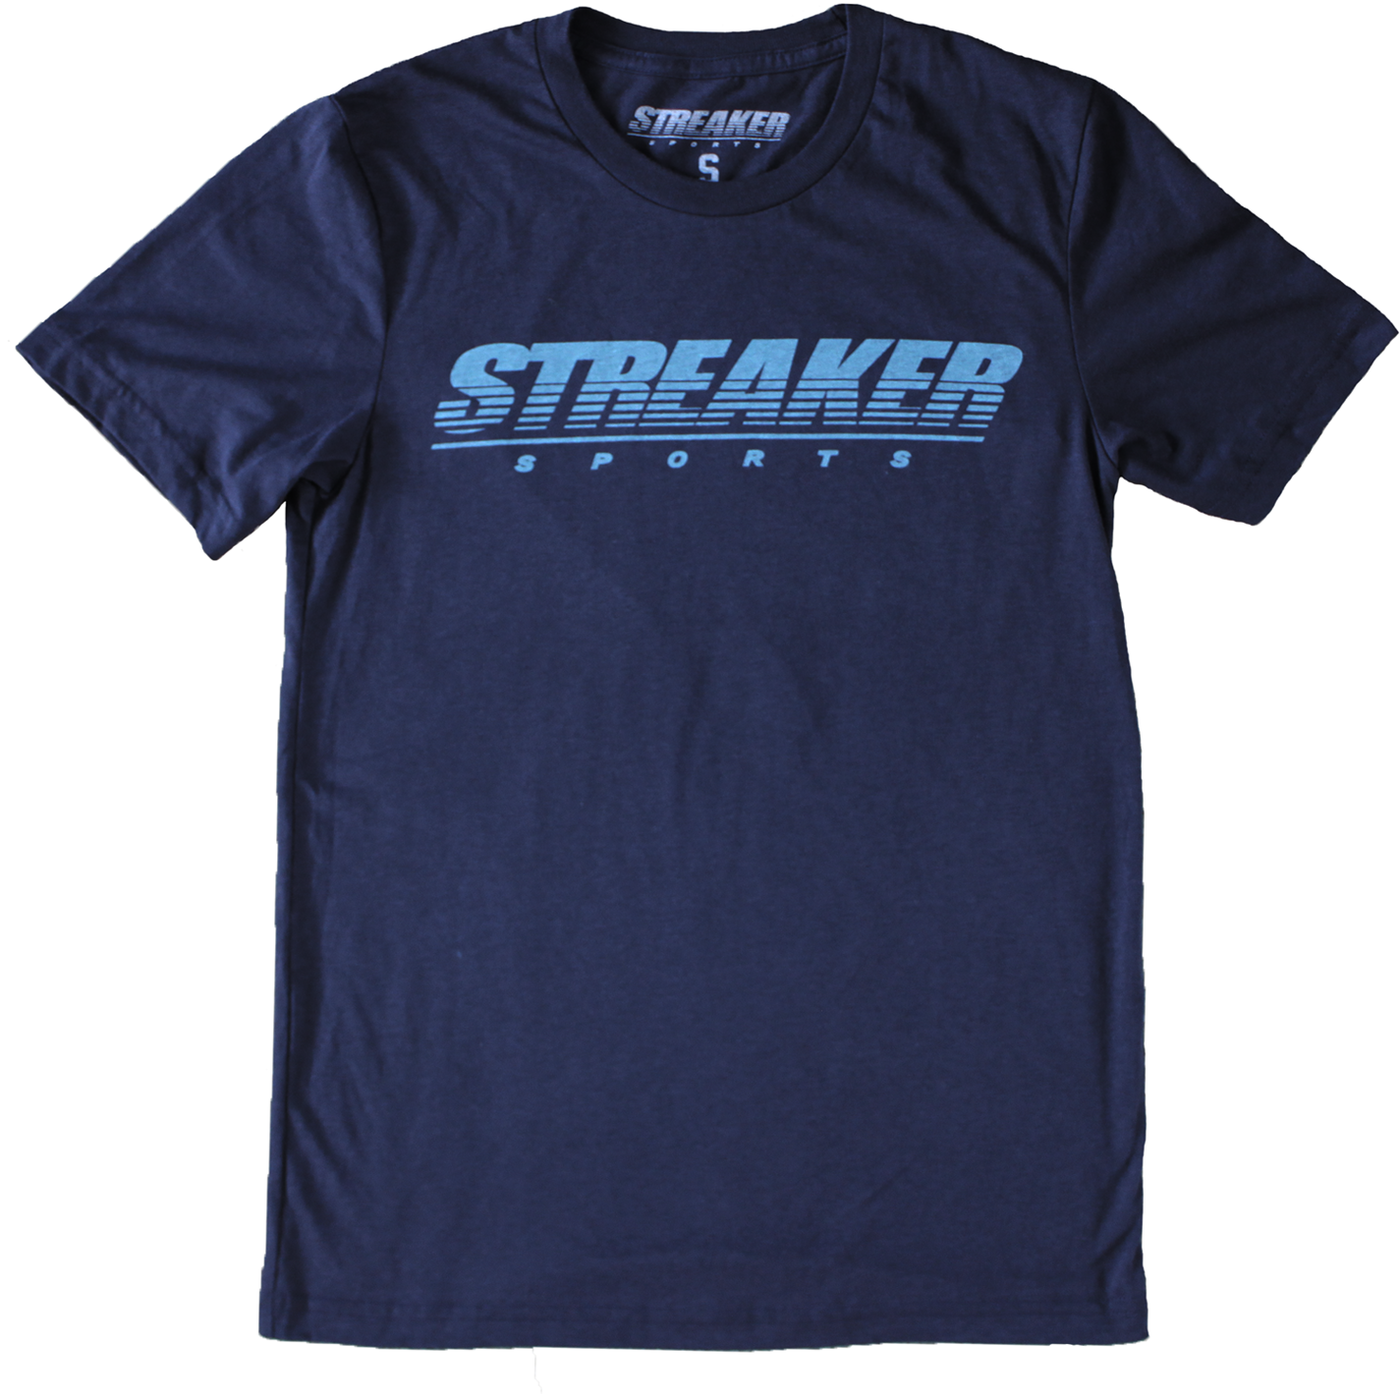 Streaker Logo Tee - Streaker Sports